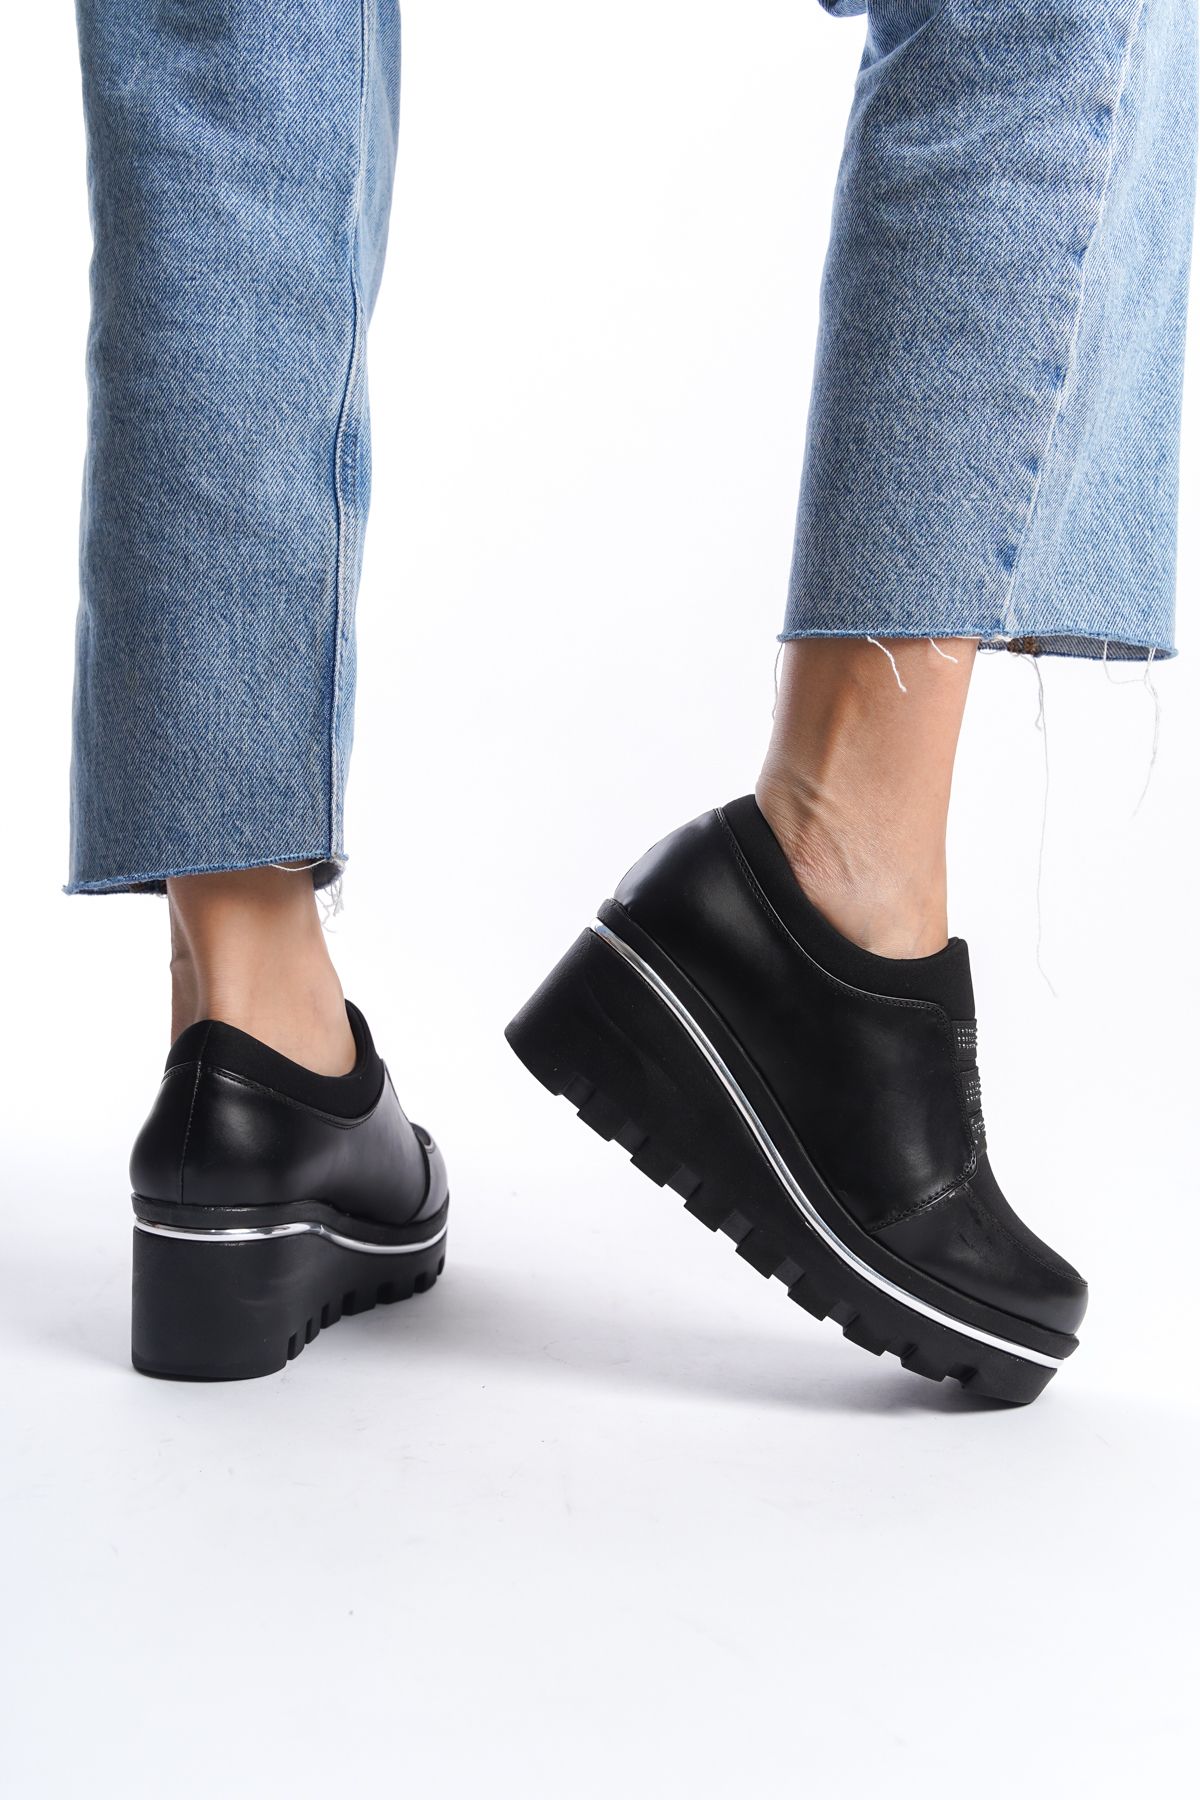 ayakkabıhavuzu Kadın Dolgu Topuk Bağcıklı Rahat Ayakkabı - Kalıp 1 Numara Küçüktür ( Bir Beden Büyük Alınız )